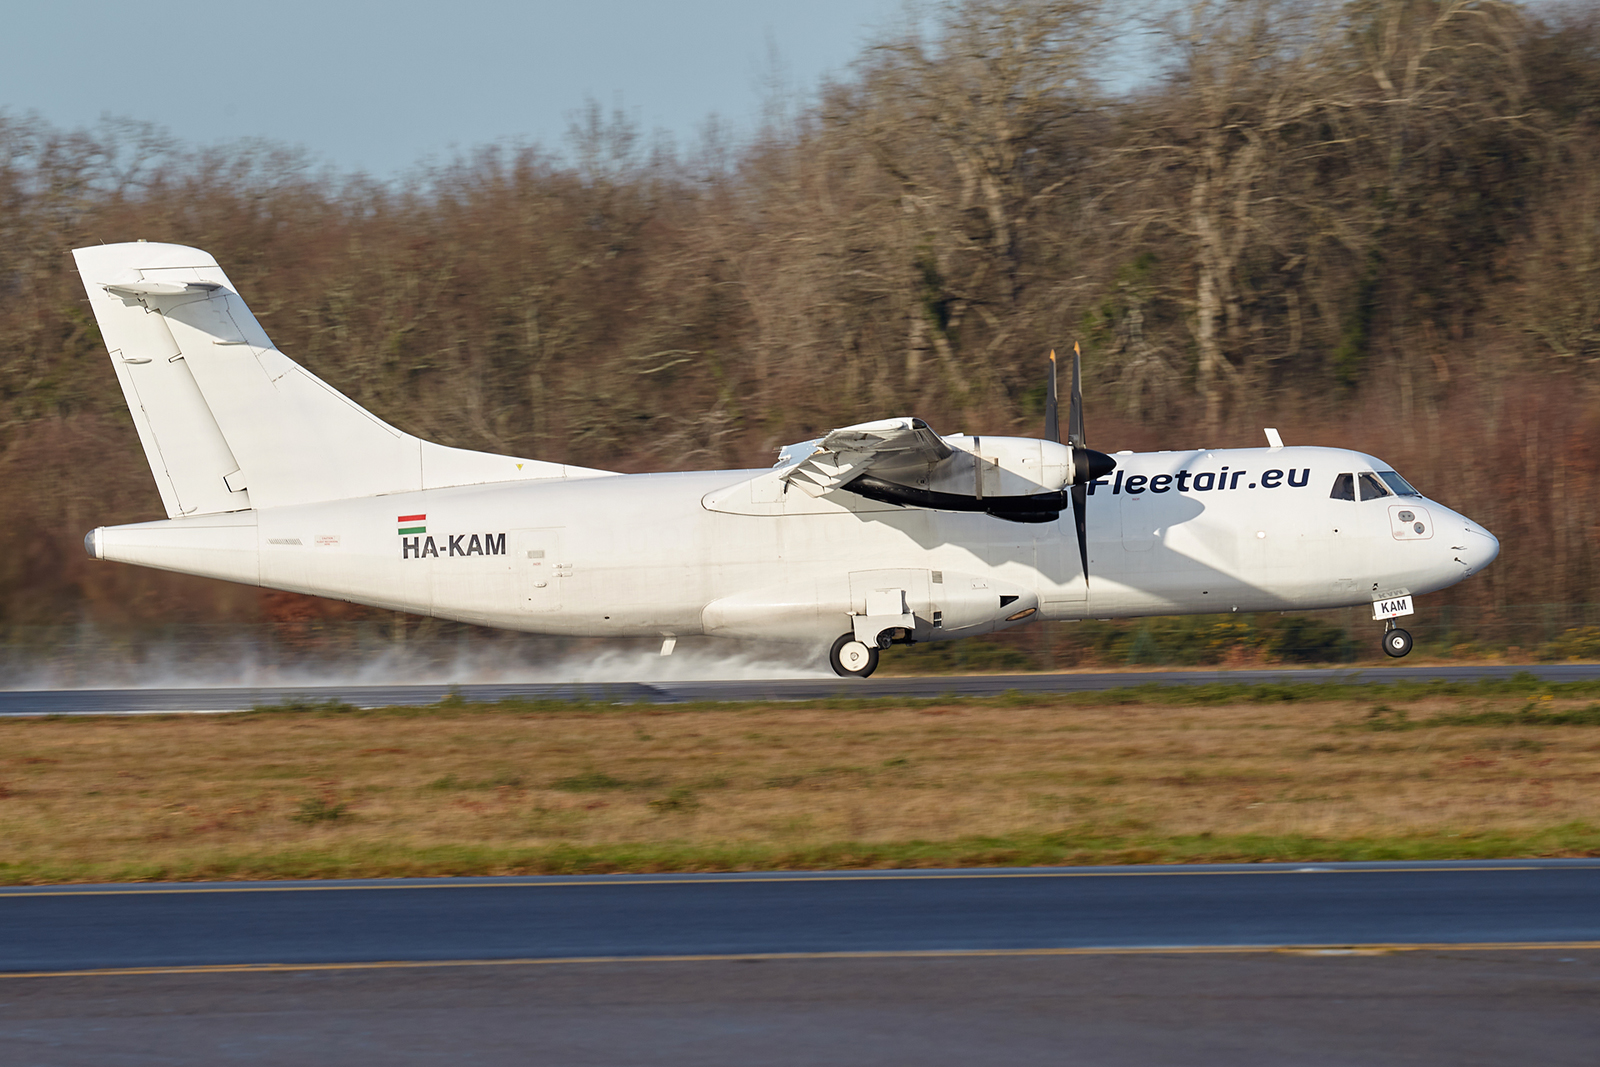 [29/12/2020] ATR 42-320(F) (HA-KAM) Fleet Air International PJBUKb-GRX-3674